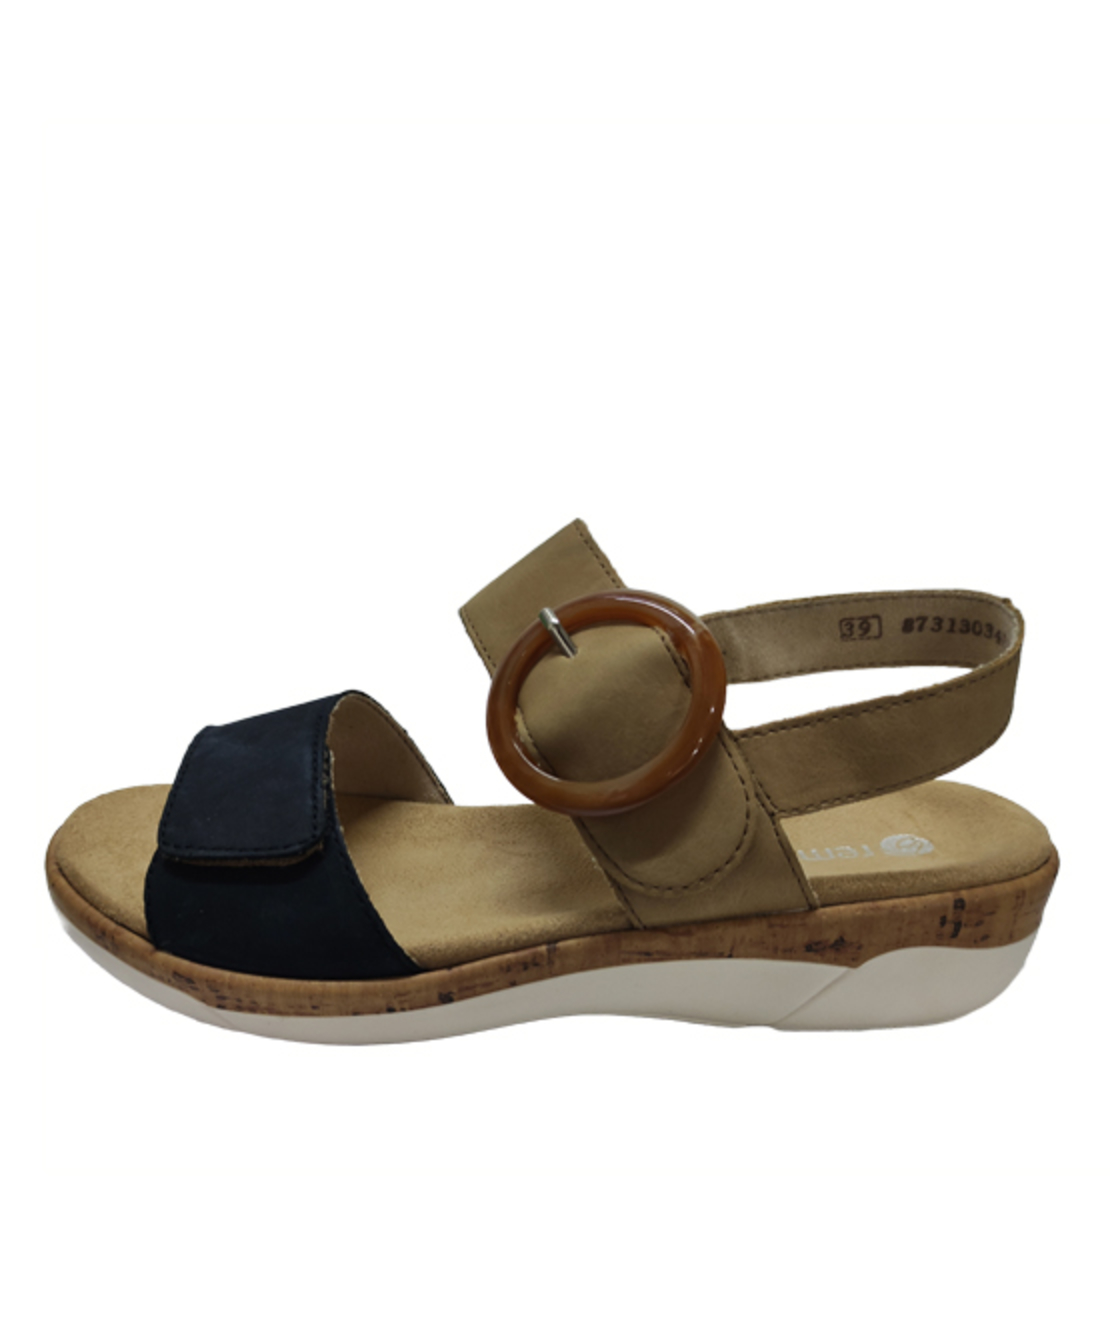 Remonte Sandals - R6853-60 - Women